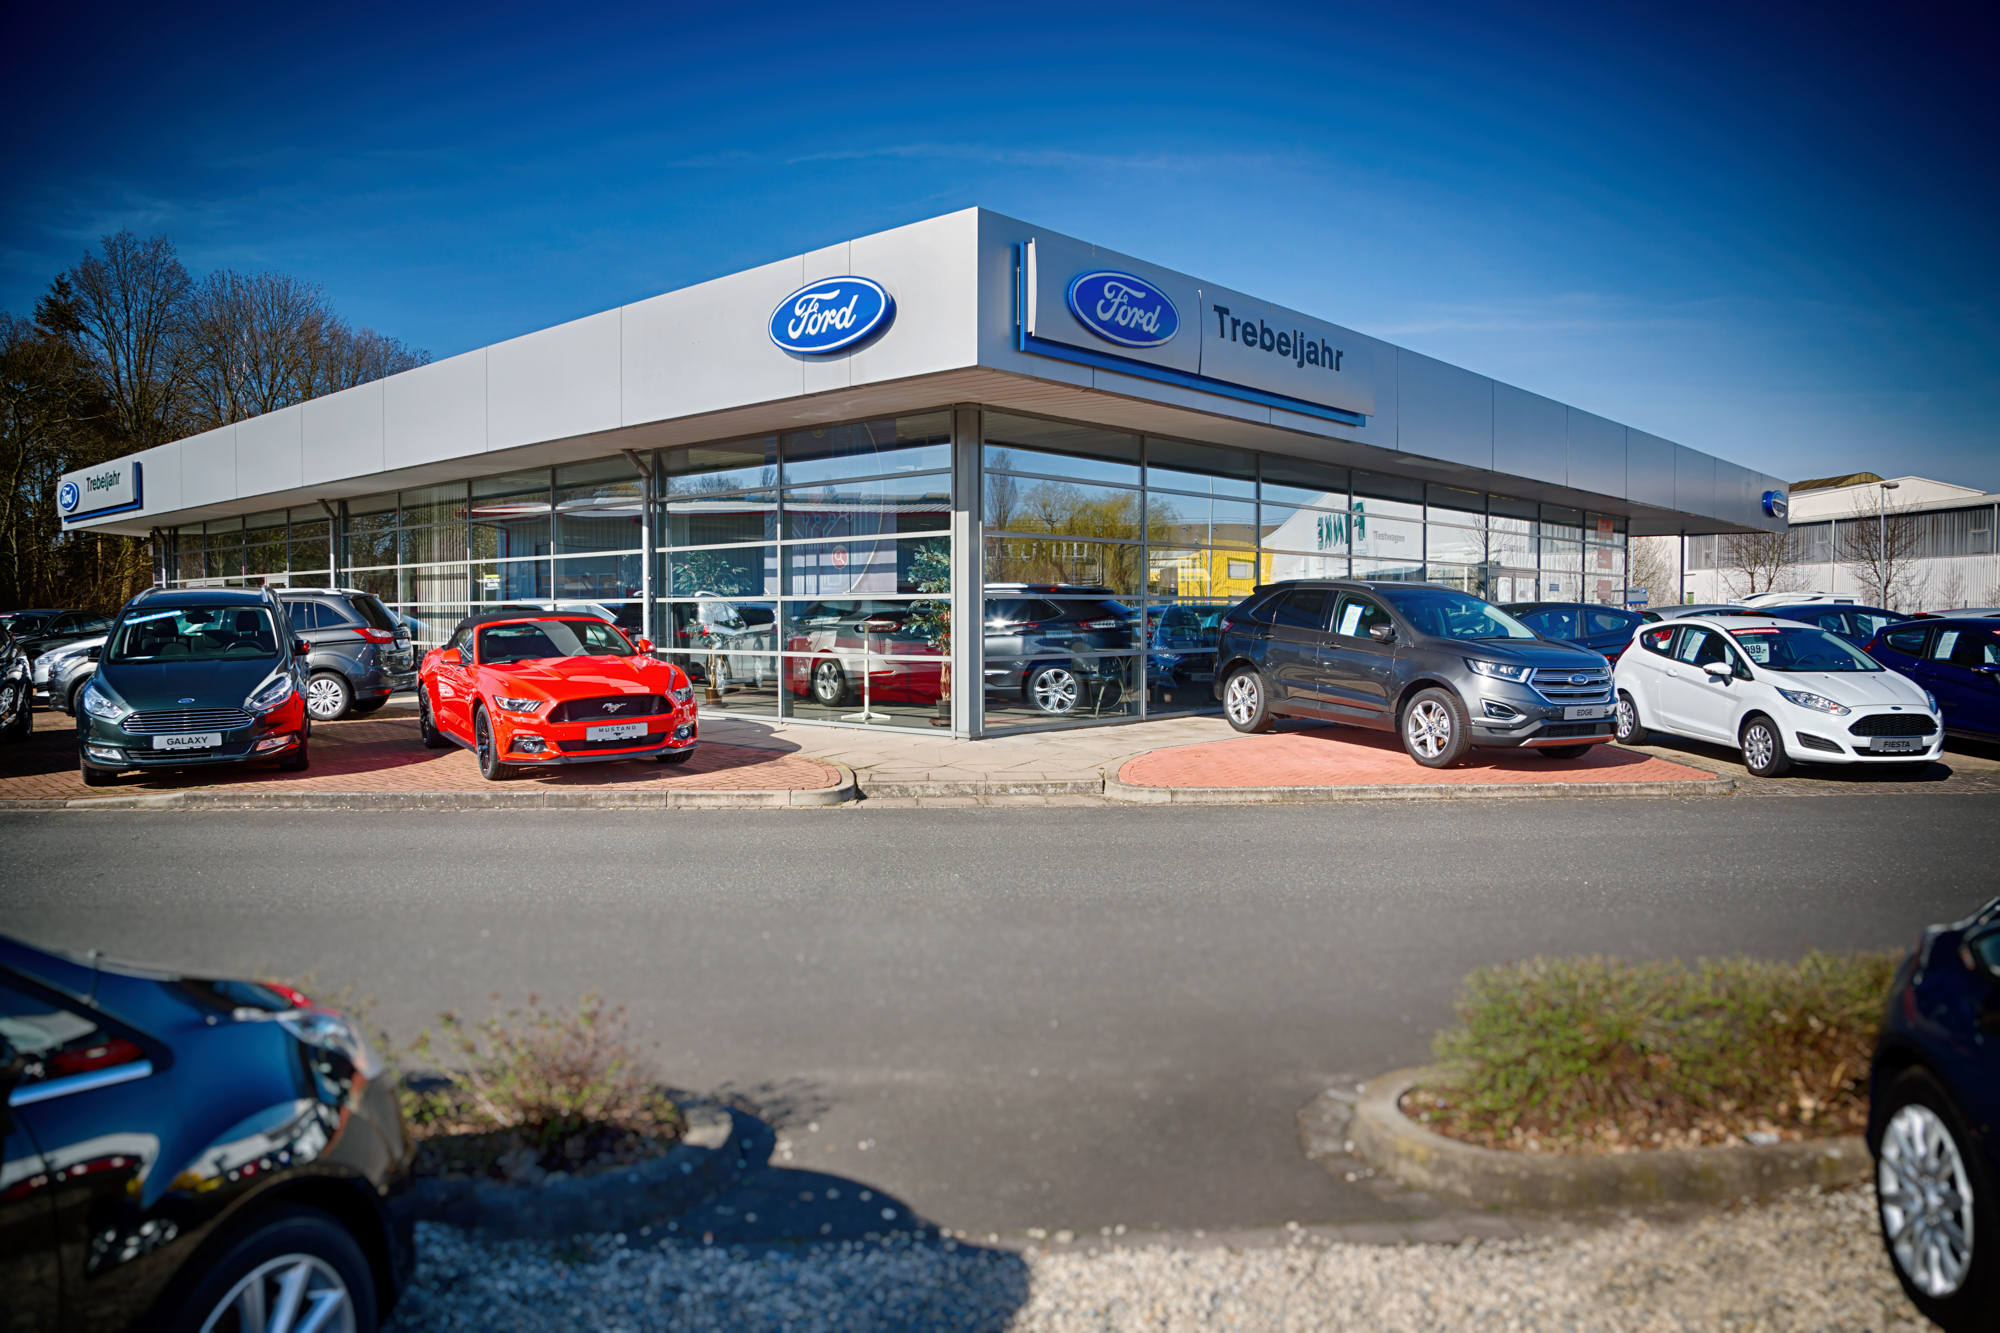 Bild 2 Autohaus Trebeljahr Ford in Wunstorf